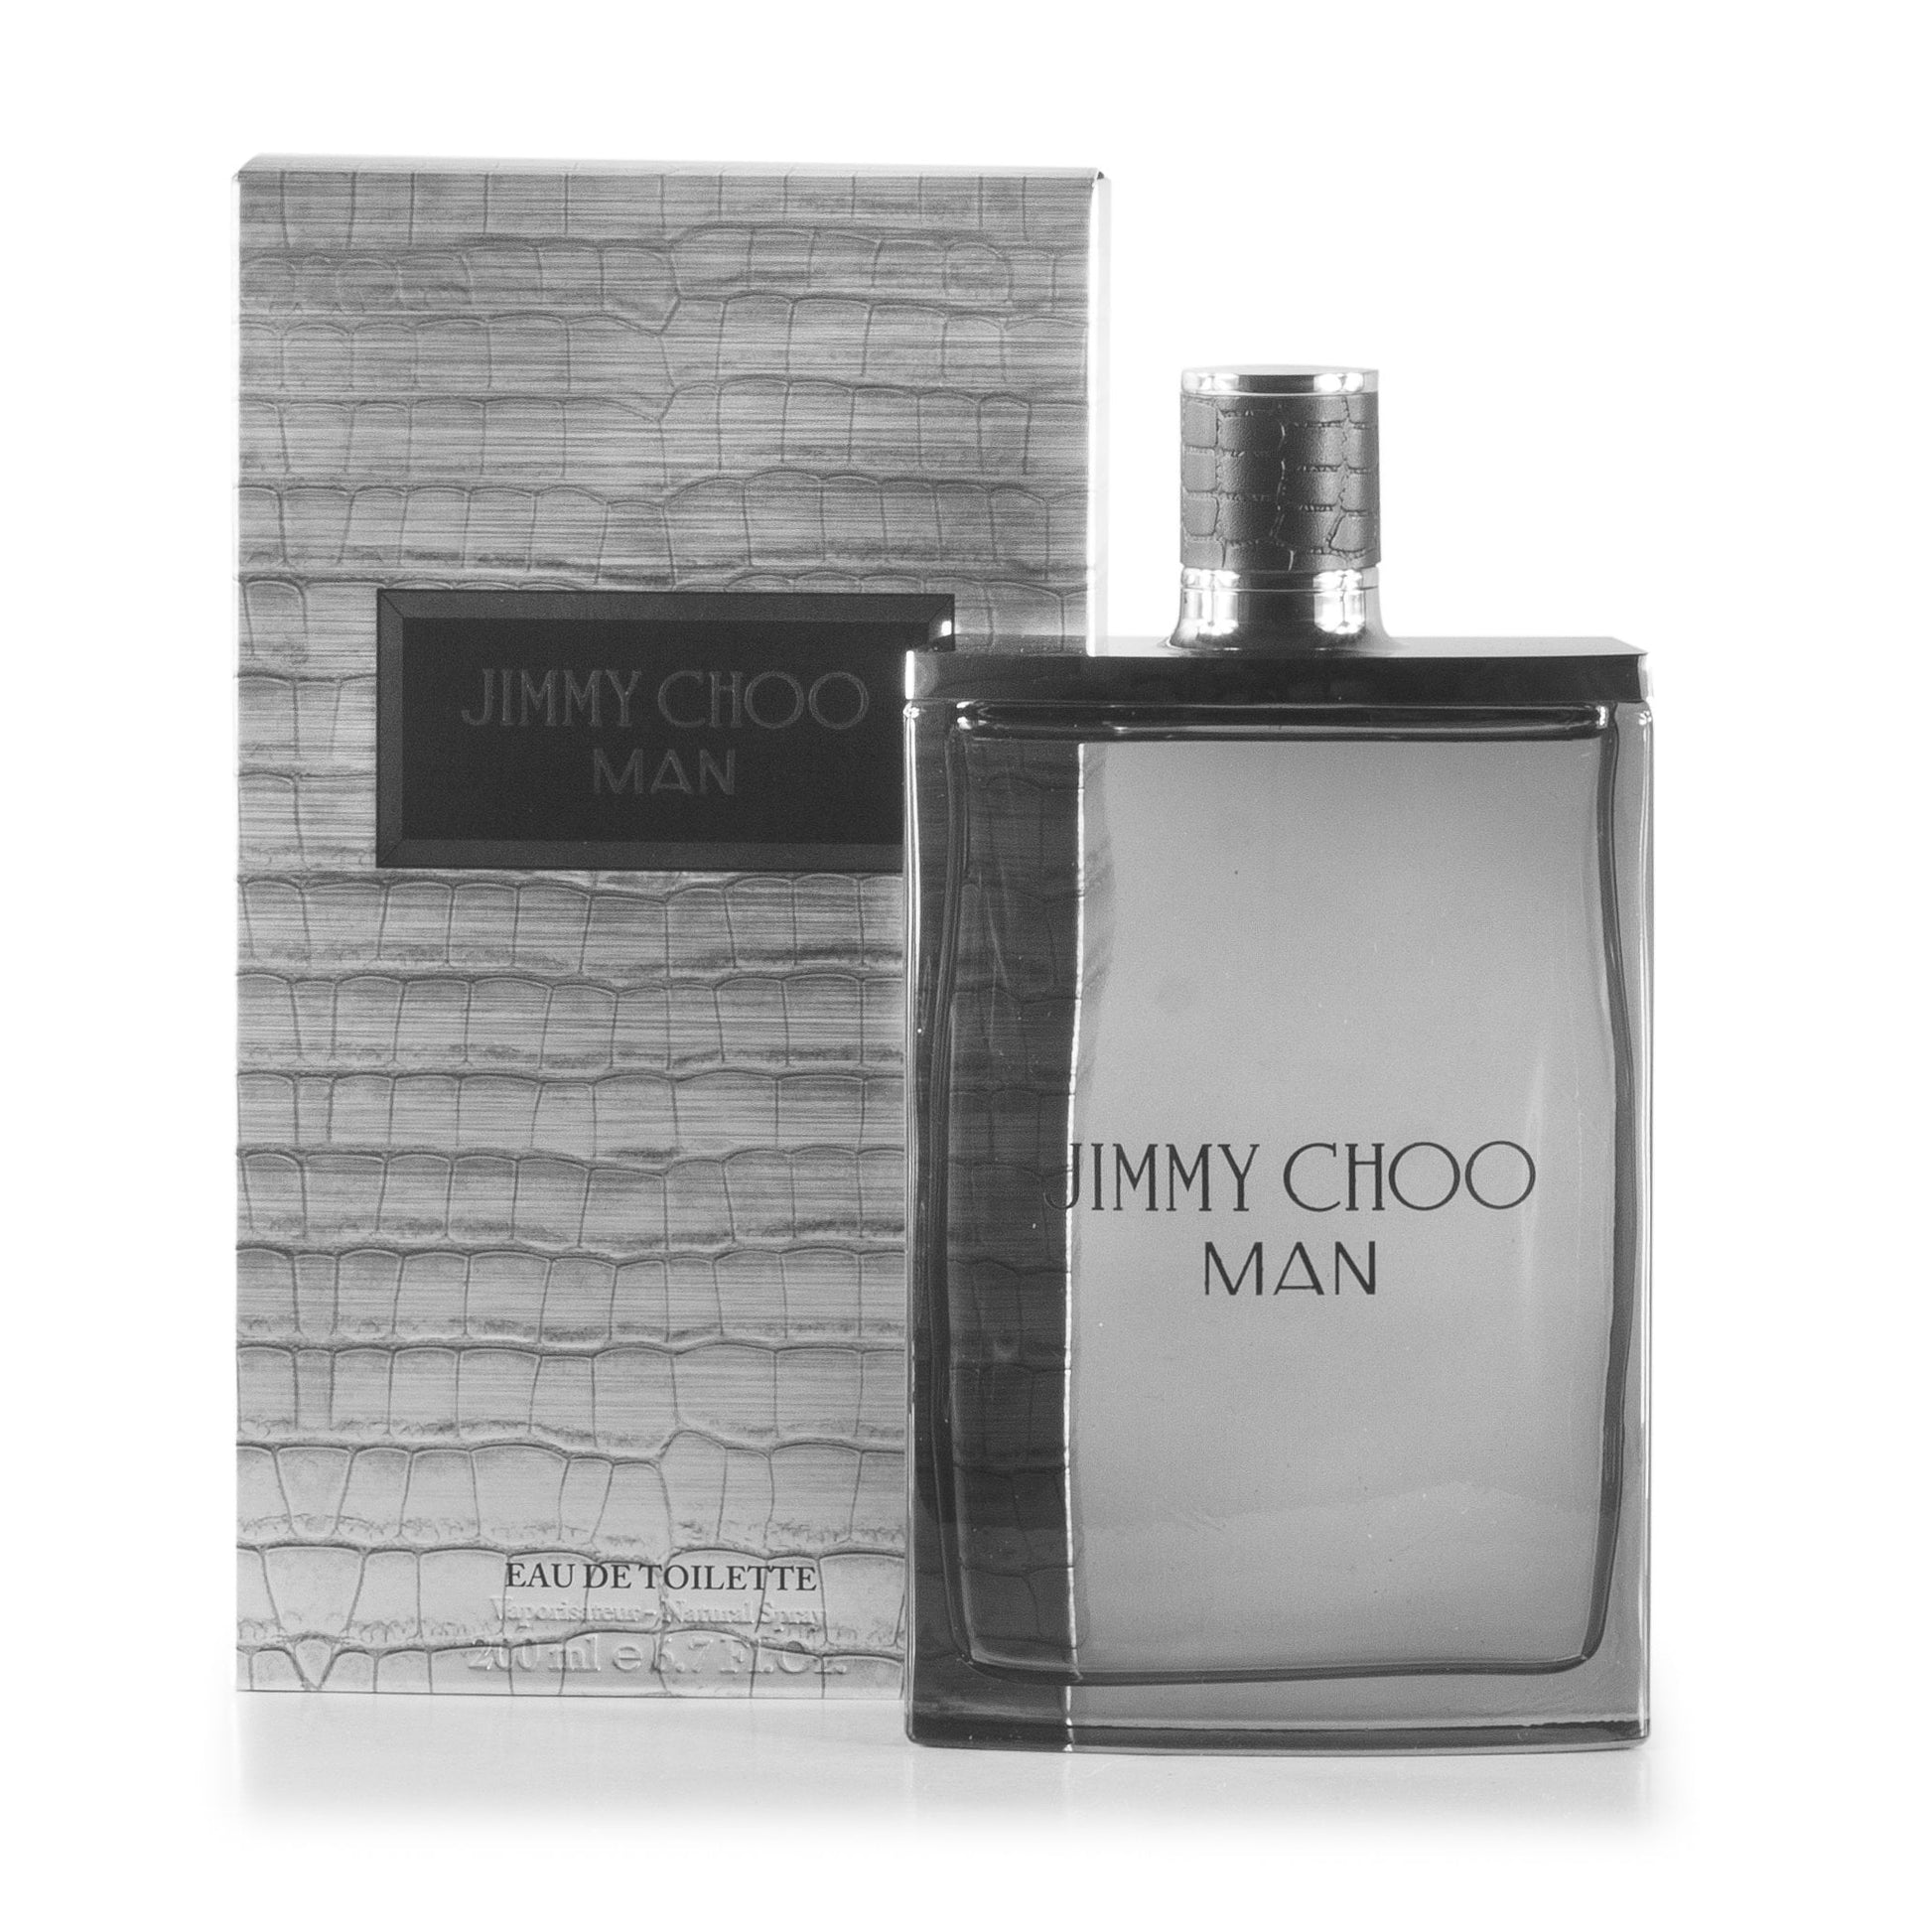 Jimmy Choo Man Eau de Toilette Spray for Men by Jimmy Choo, Product image 7